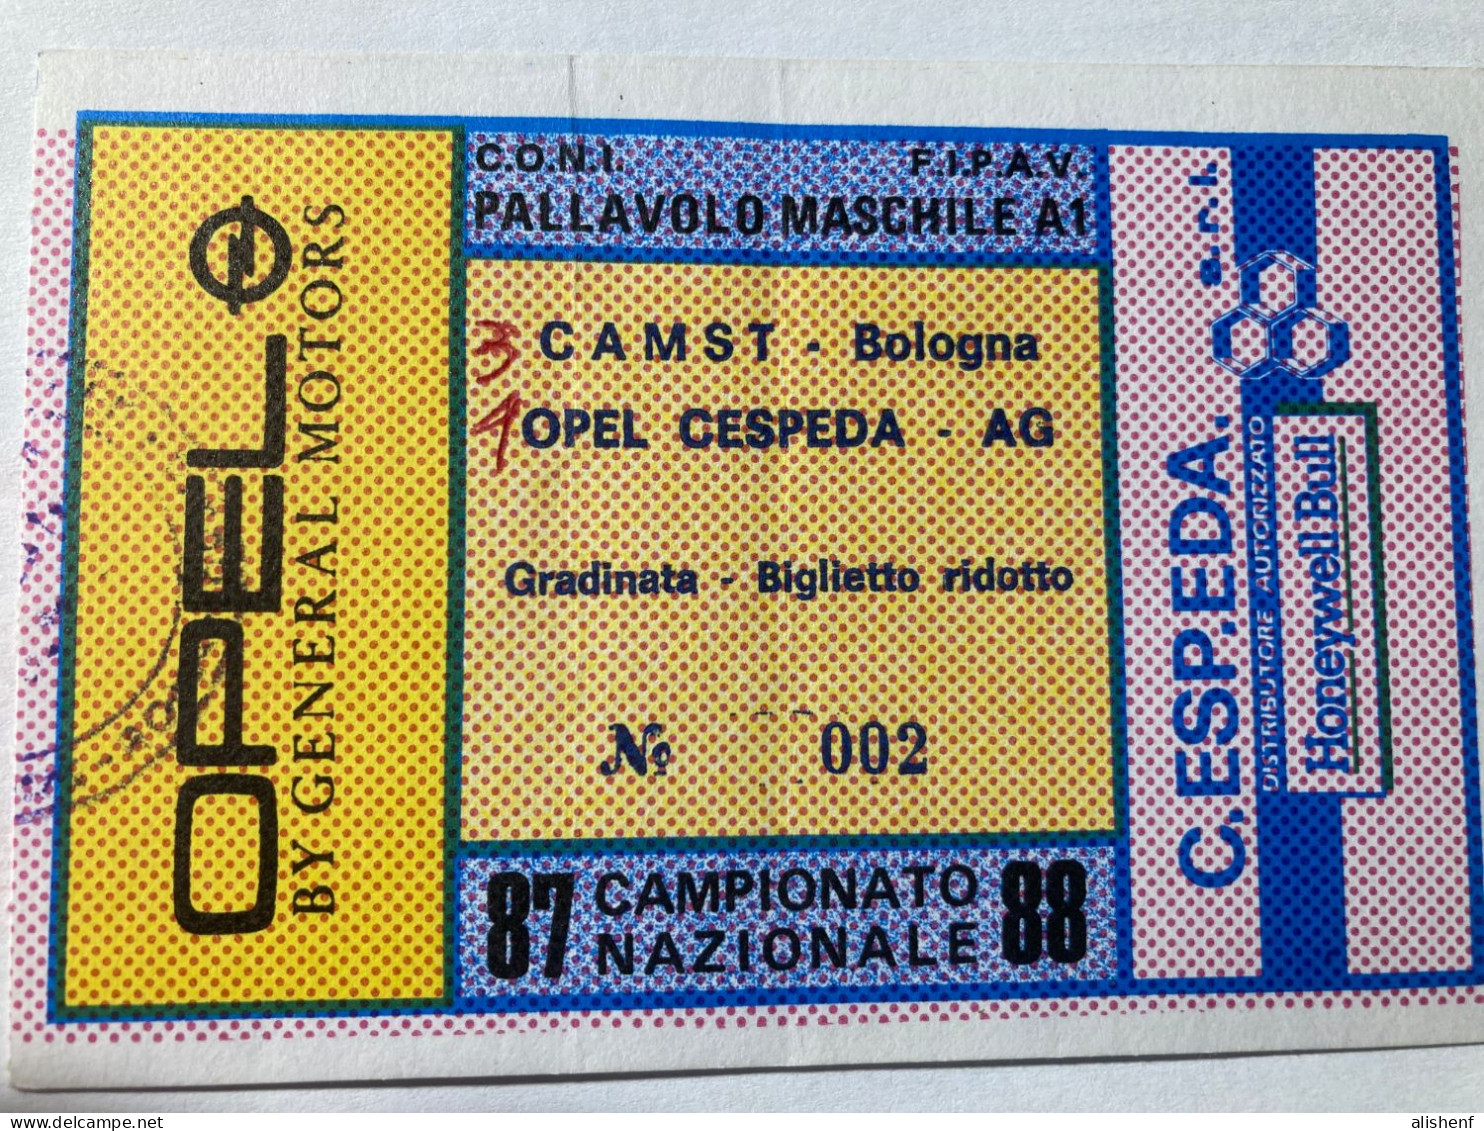 Biglietto Pallavolo Maschile A1 Opel Cespeda Agrigento CAMST Bologna Campionato 1987-88 - Eintrittskarten